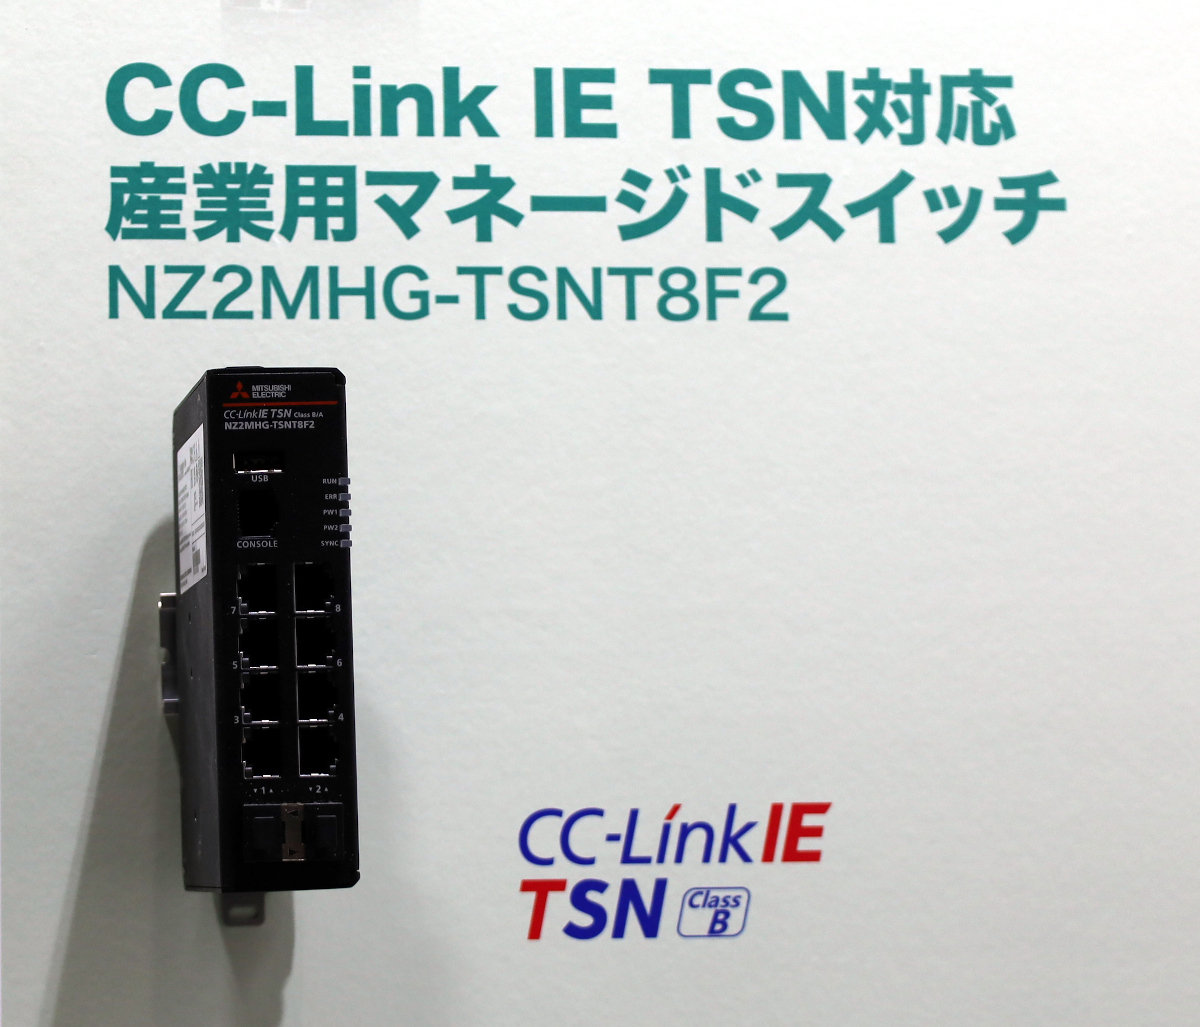 CC-Link IE TSNΉ̎YƗplbg[NXCb`mNbNŊgn